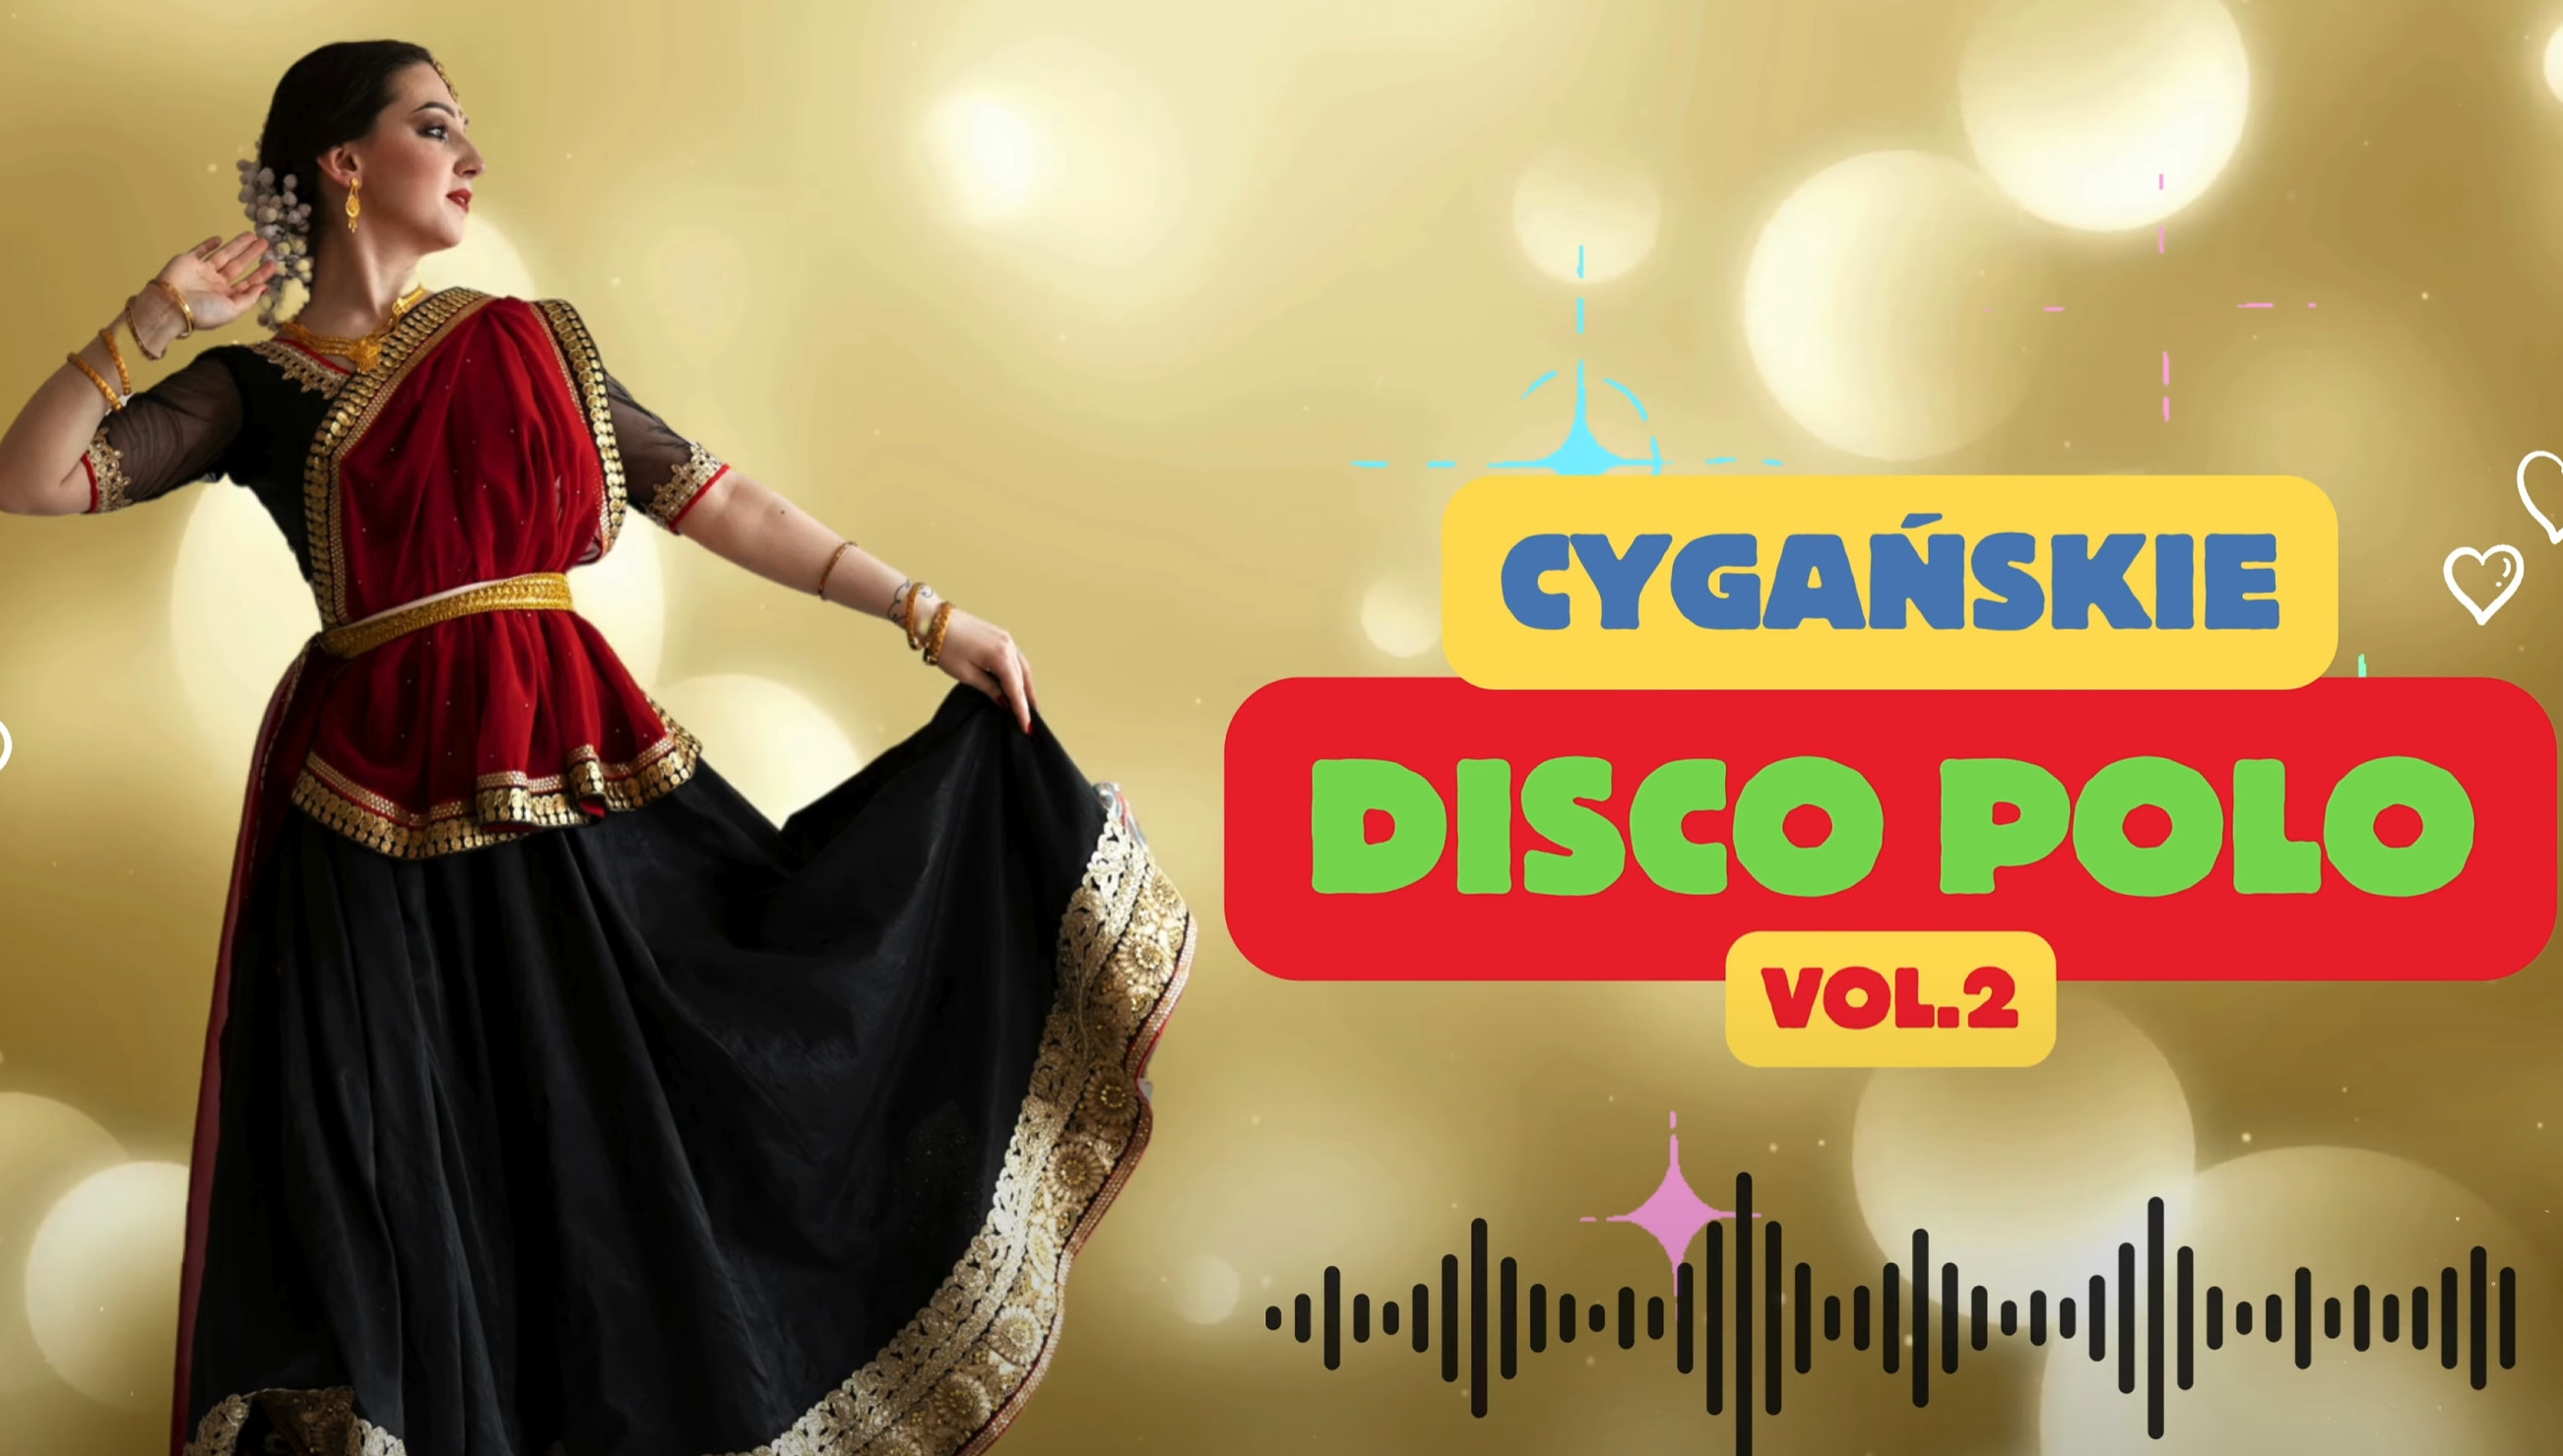 Wyjątkowa składanka z największymi przebojami za darmo! Cygańskie Disco Polo vol.2 Album dostępnym w naszym serwisie disco-polo.info